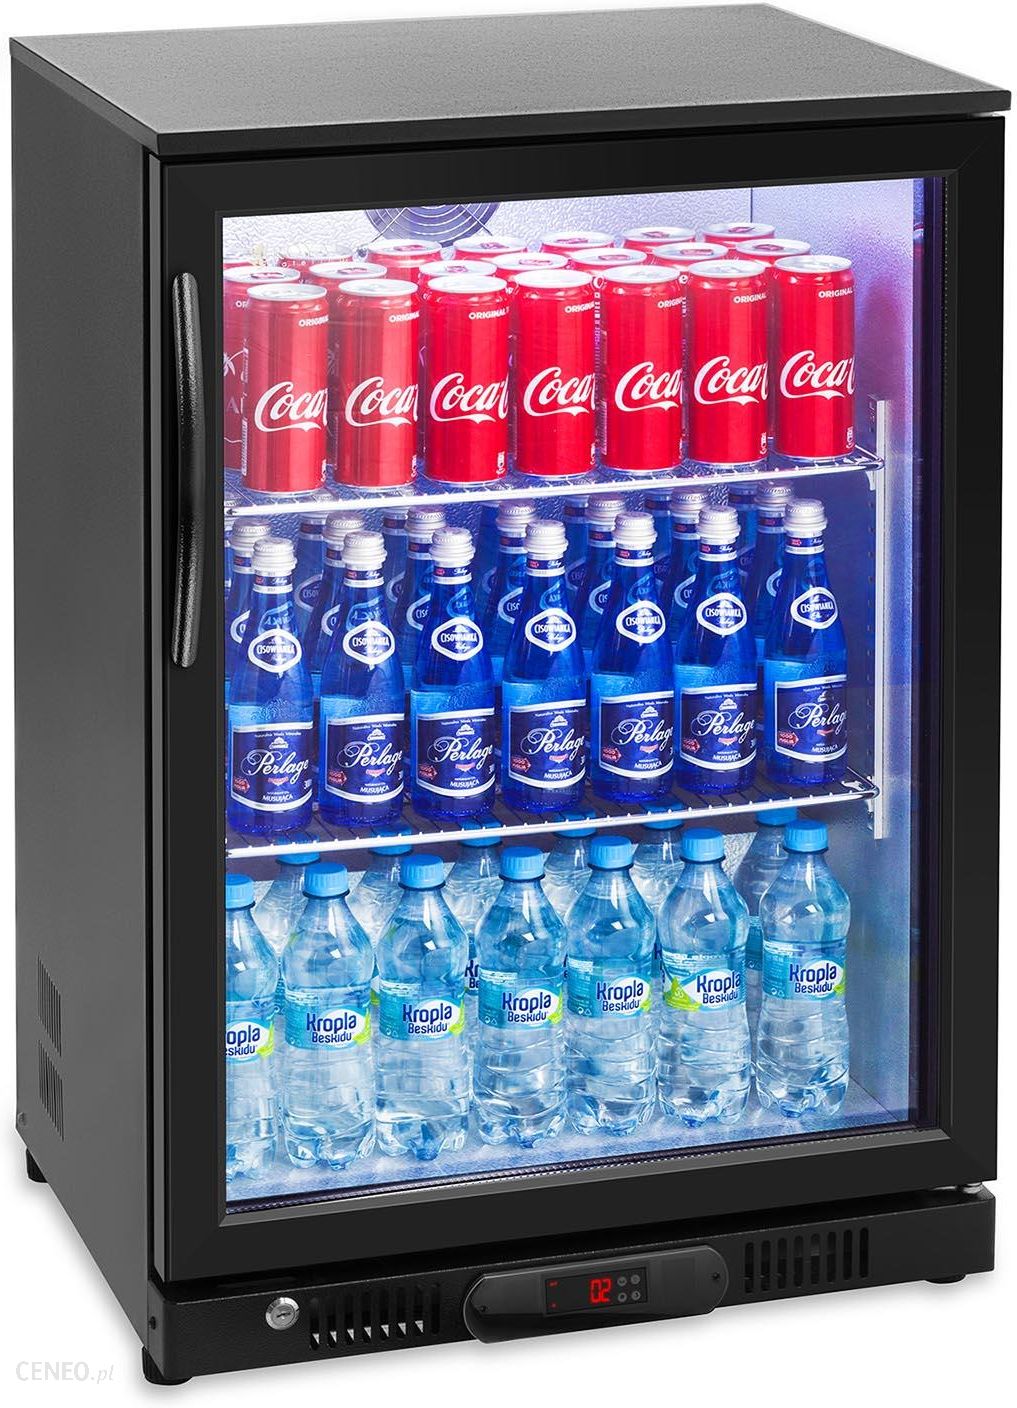 Маленький холодильник для напитков. Холодильник display Cooler bc68-MS. Шкаф холодильный GASTRORAG bc68-MS. Шкаф холодильный барный GASTRORAG bc68-MS. Холодильник для напитков е20д.